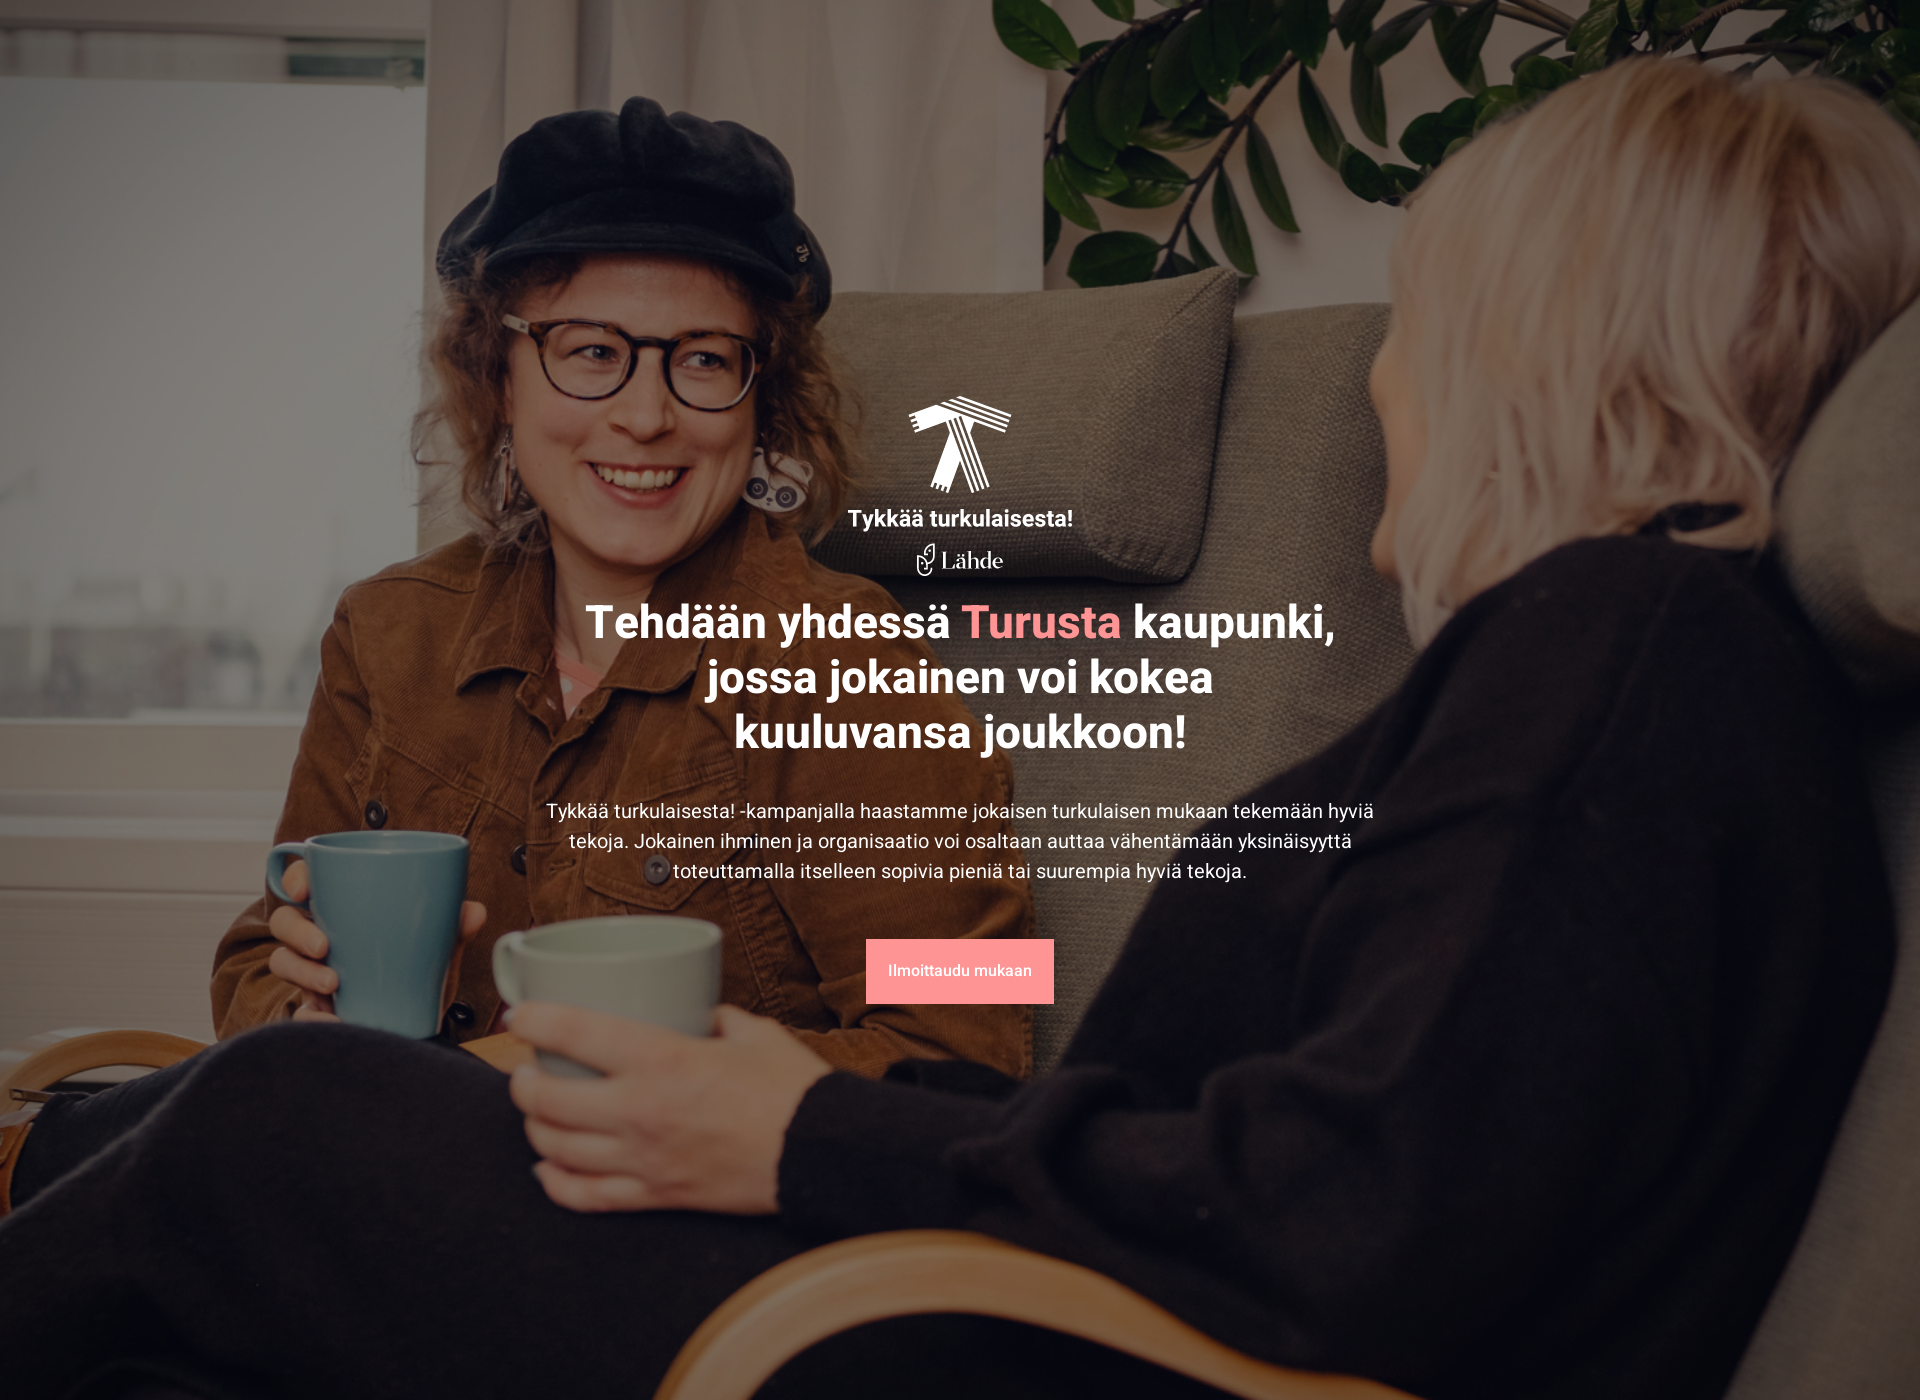 Näyttökuva tykkaaturkulaisesta.fi